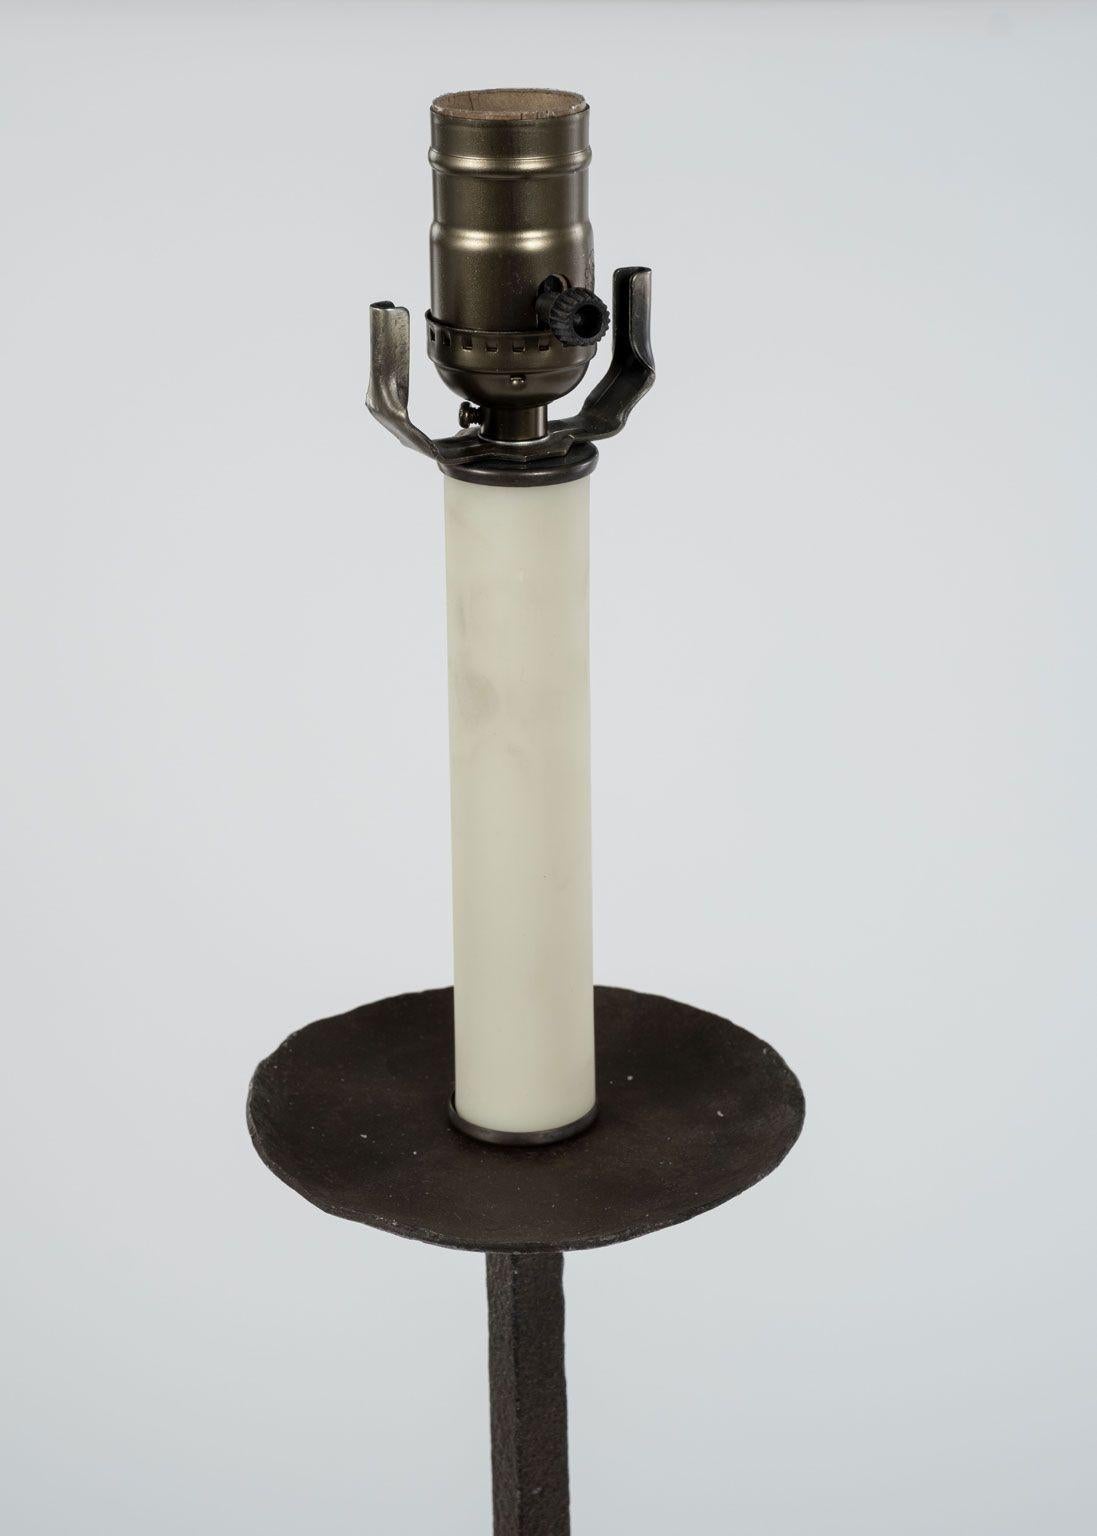 Lampadaire en fer forgé composé d'un bougeoir en fer torsadé reposant sur une base tripode (vers 1920-1939). N'inclut pas l'abat-jour (les mesures indiquées sont sans abat-jour). L'abat-jour cache-tambour de la photo est vendu séparément (375 $).